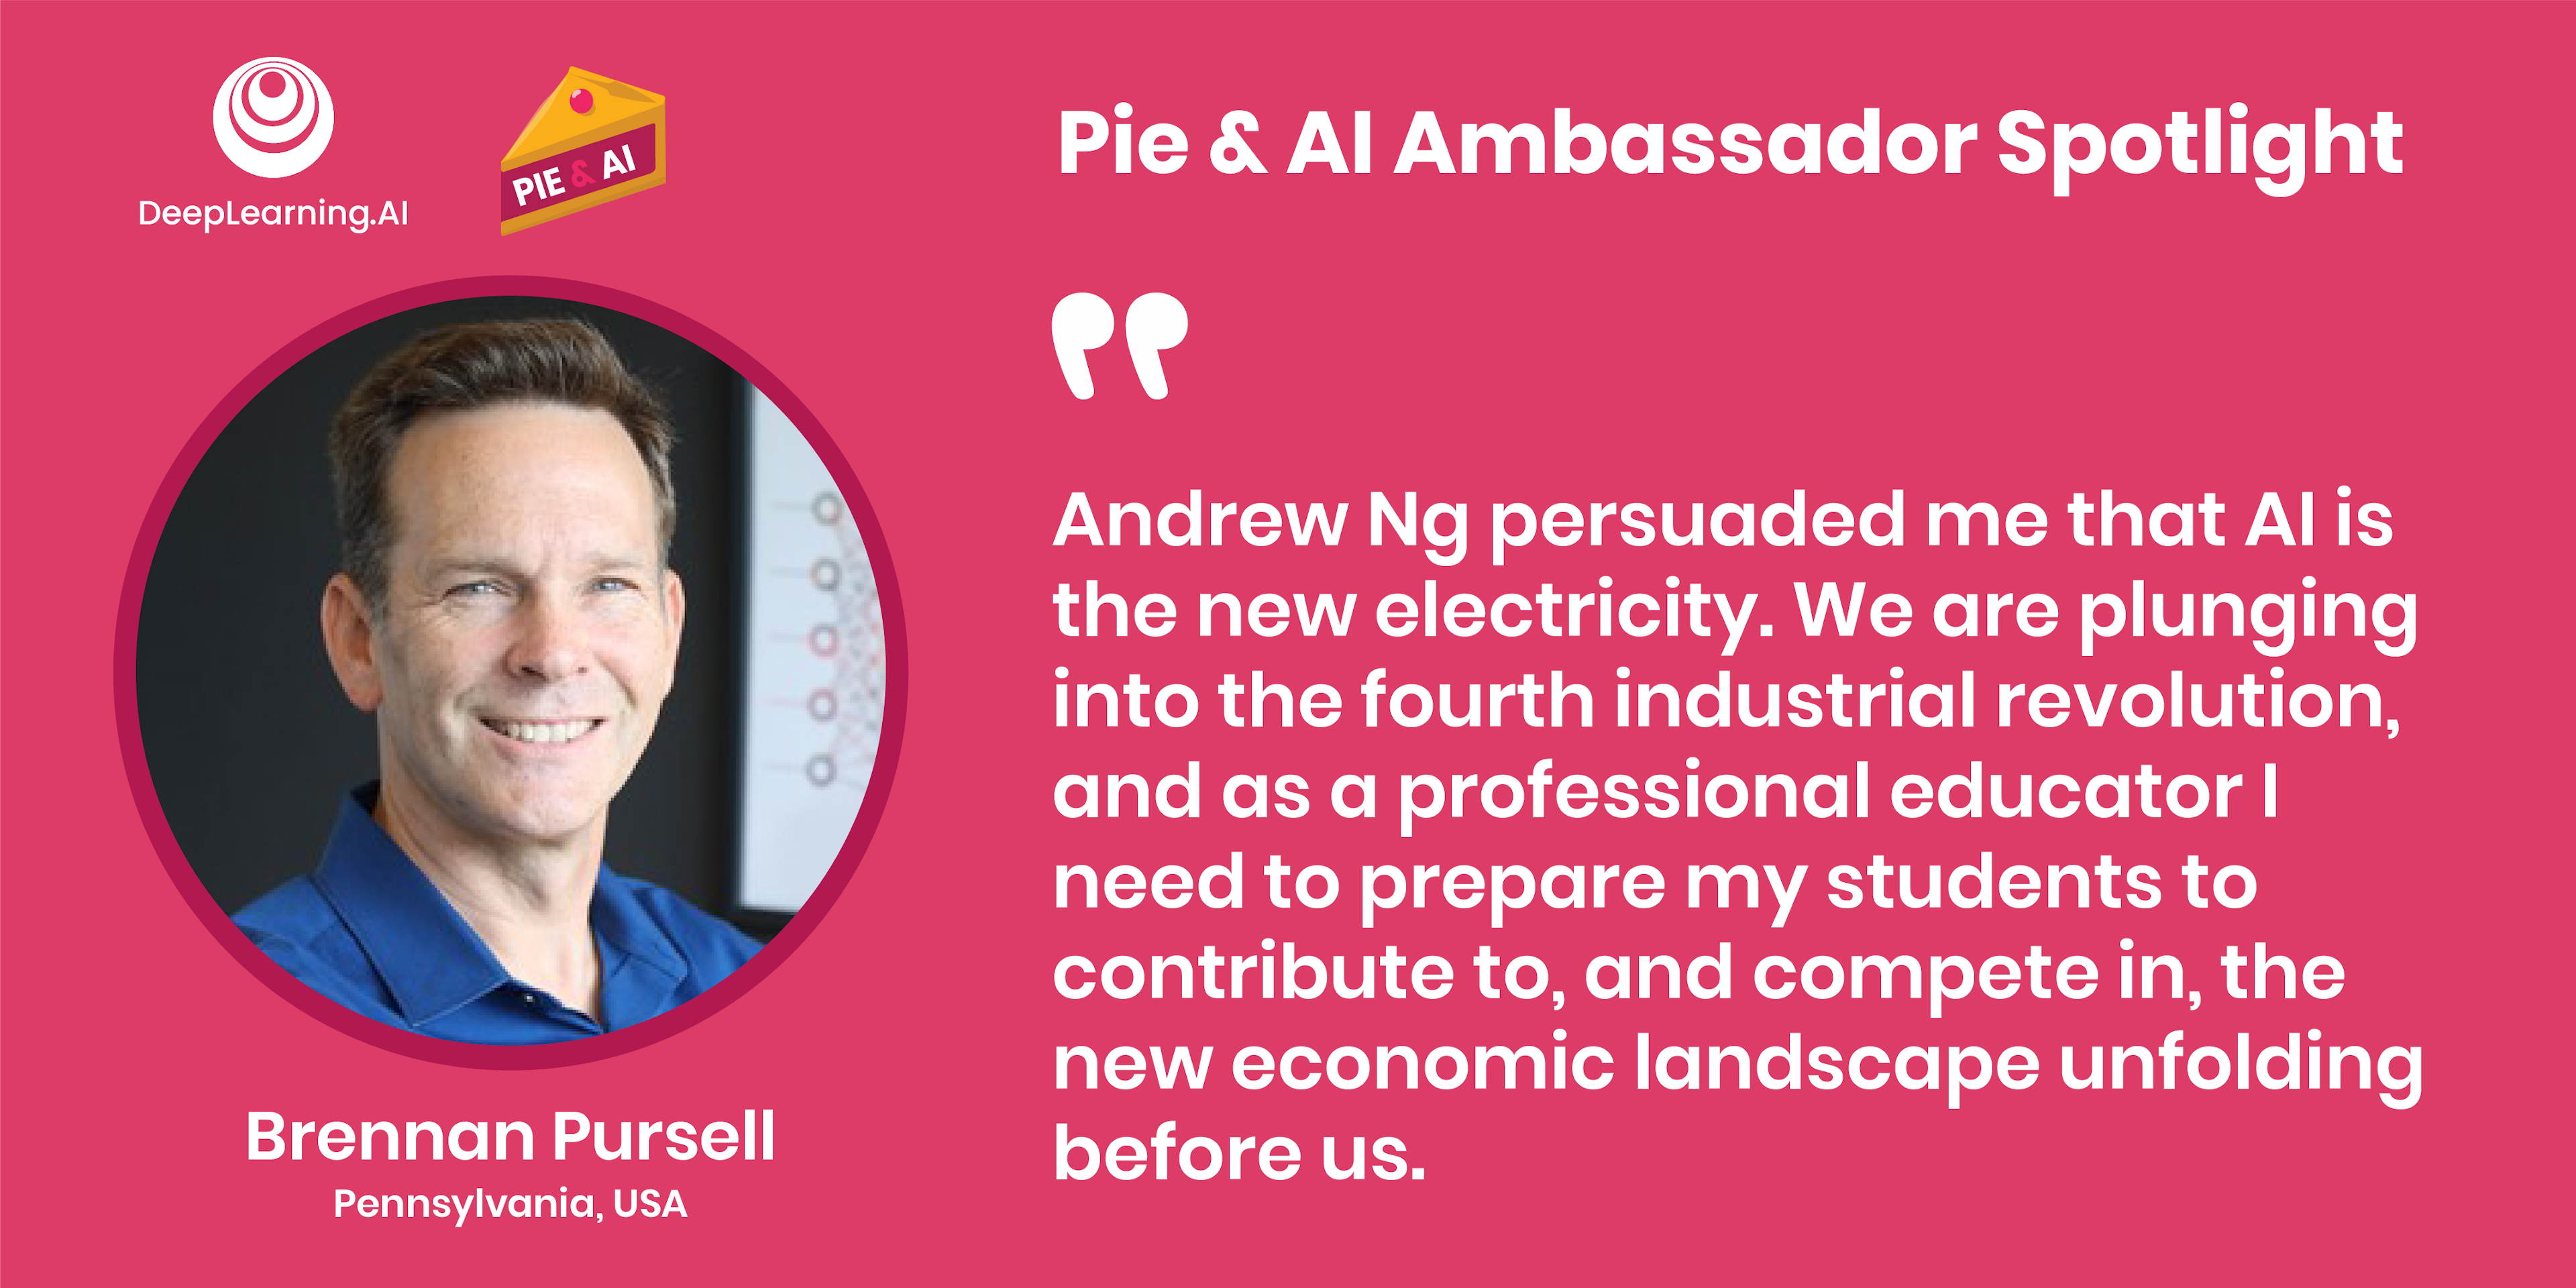 2023 Pie & AI Ambassador Spotlight: Brennan Pursell, Pennsylvania